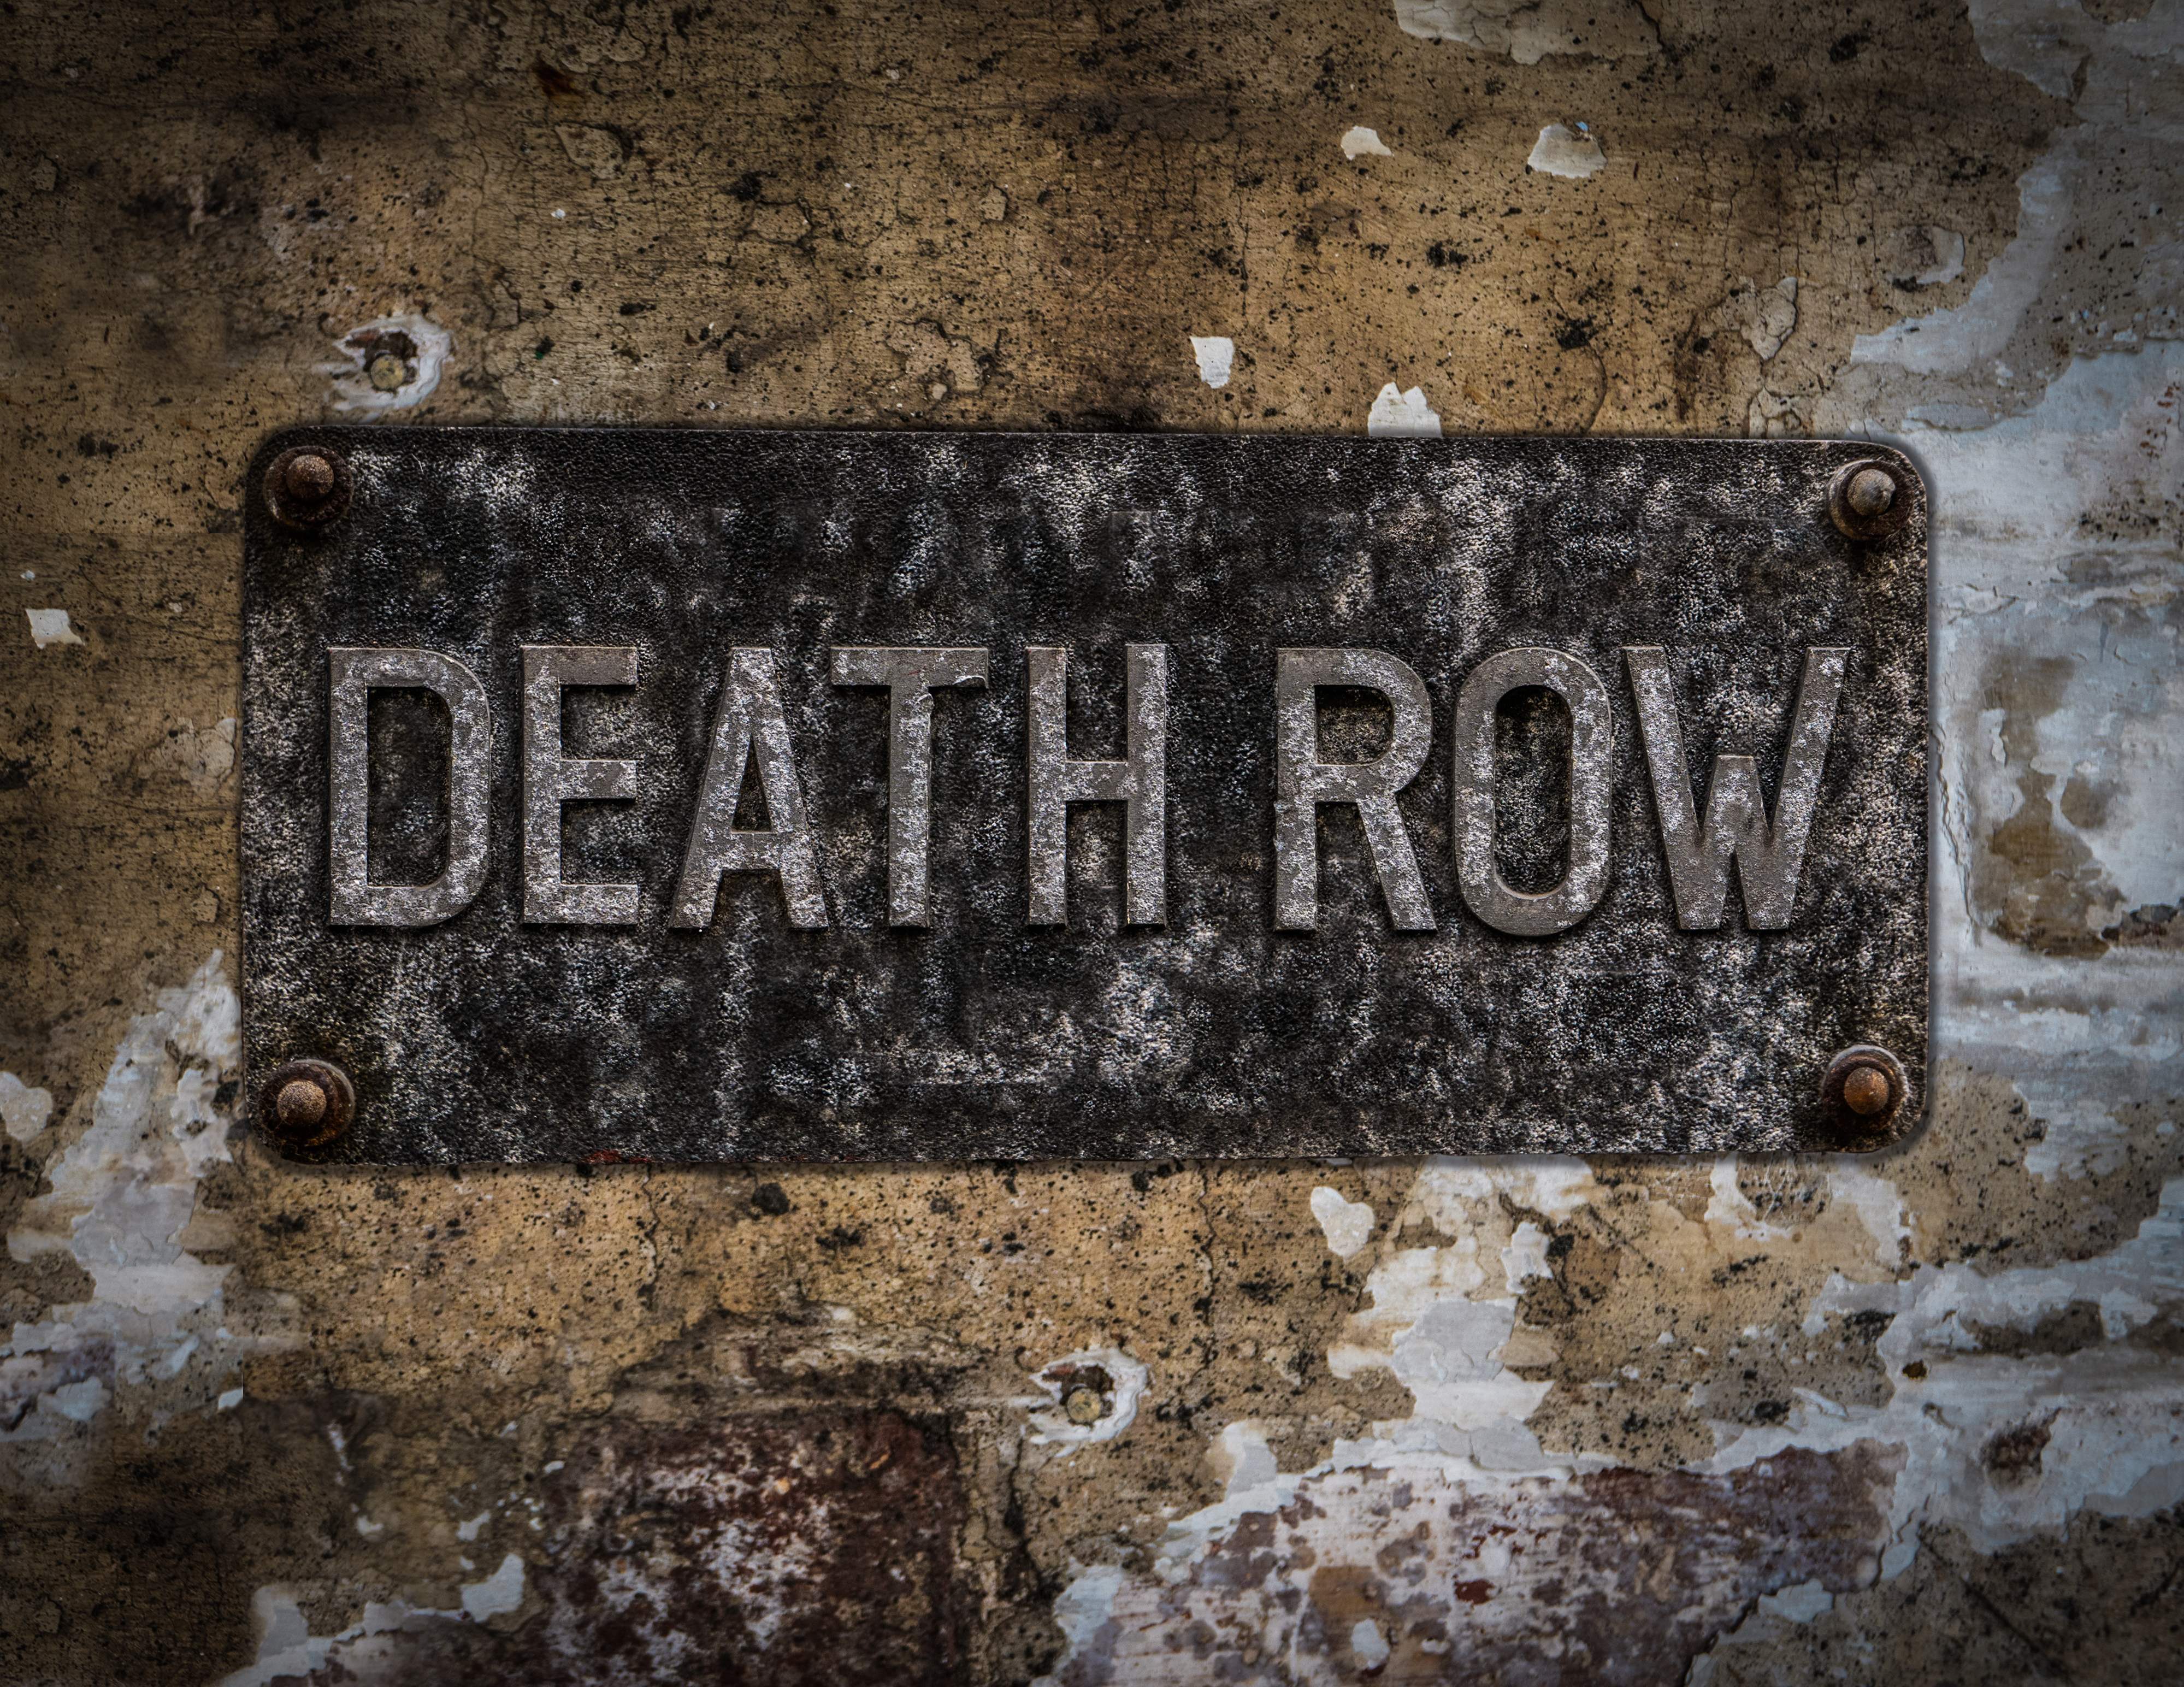 death row sign